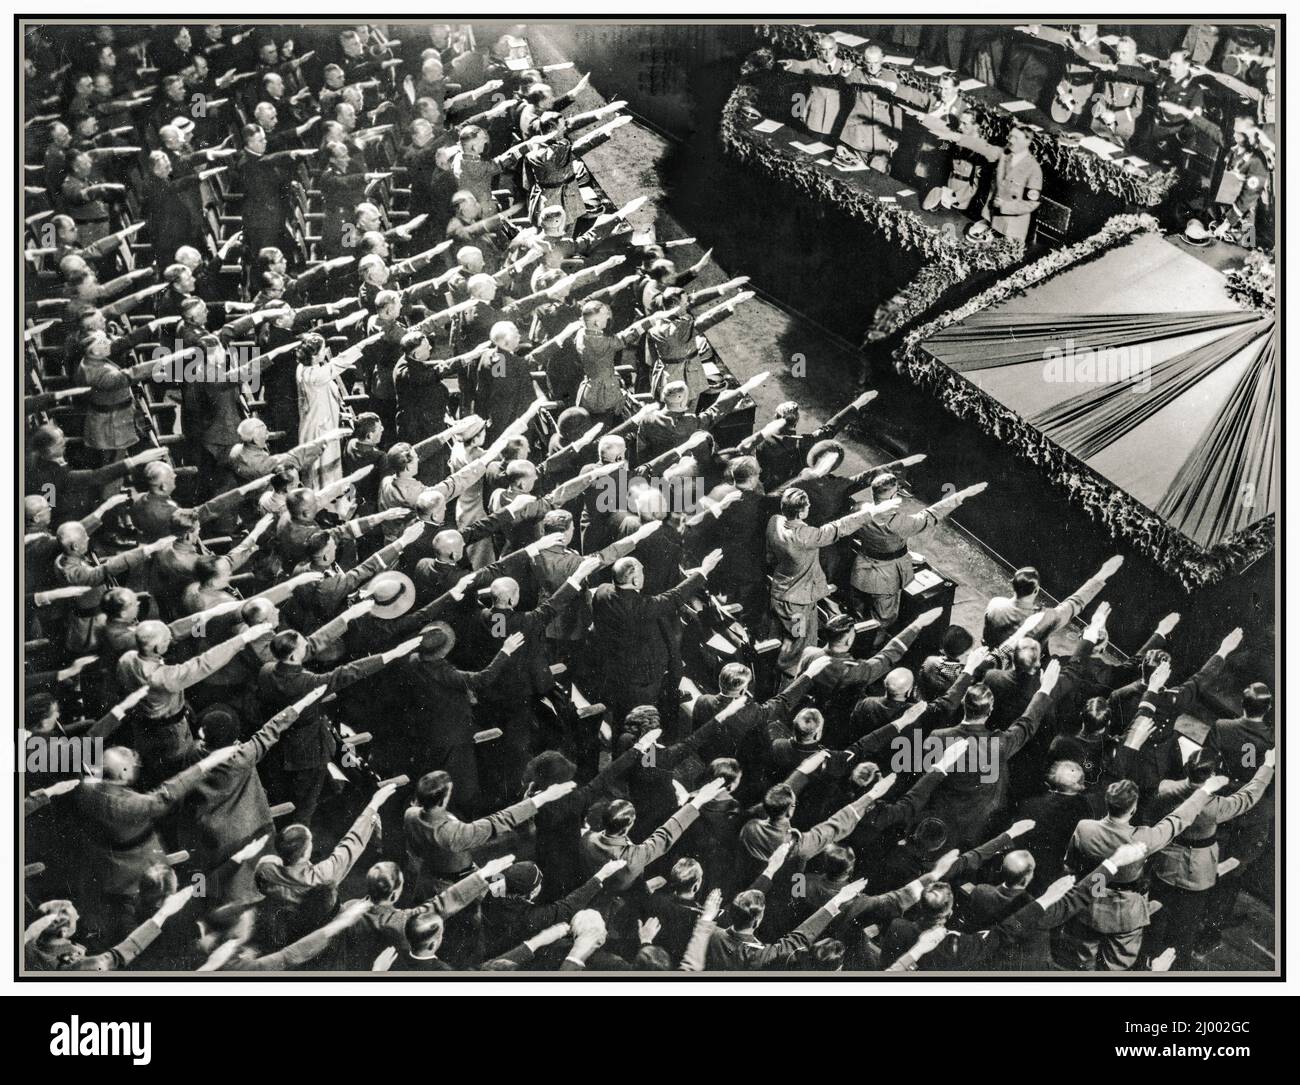 WINTERHILSWERK Allemagne nazie HEIL HITLER SALUE LA FOULE 1935 dans l'Opéra de Kroll à Berlin, le début des travaux pour l'aide d'hiver a été fessely ouvert par Fuhrer Adolf Hitler. Les personnes présentes apportent le salut nazi de Heil Hitler et chantent l'hymne national. Dans ce bâtiment, Hitler a annoncé le déclenchement de la Seconde Guerre mondiale en 1939. Banque D'Images